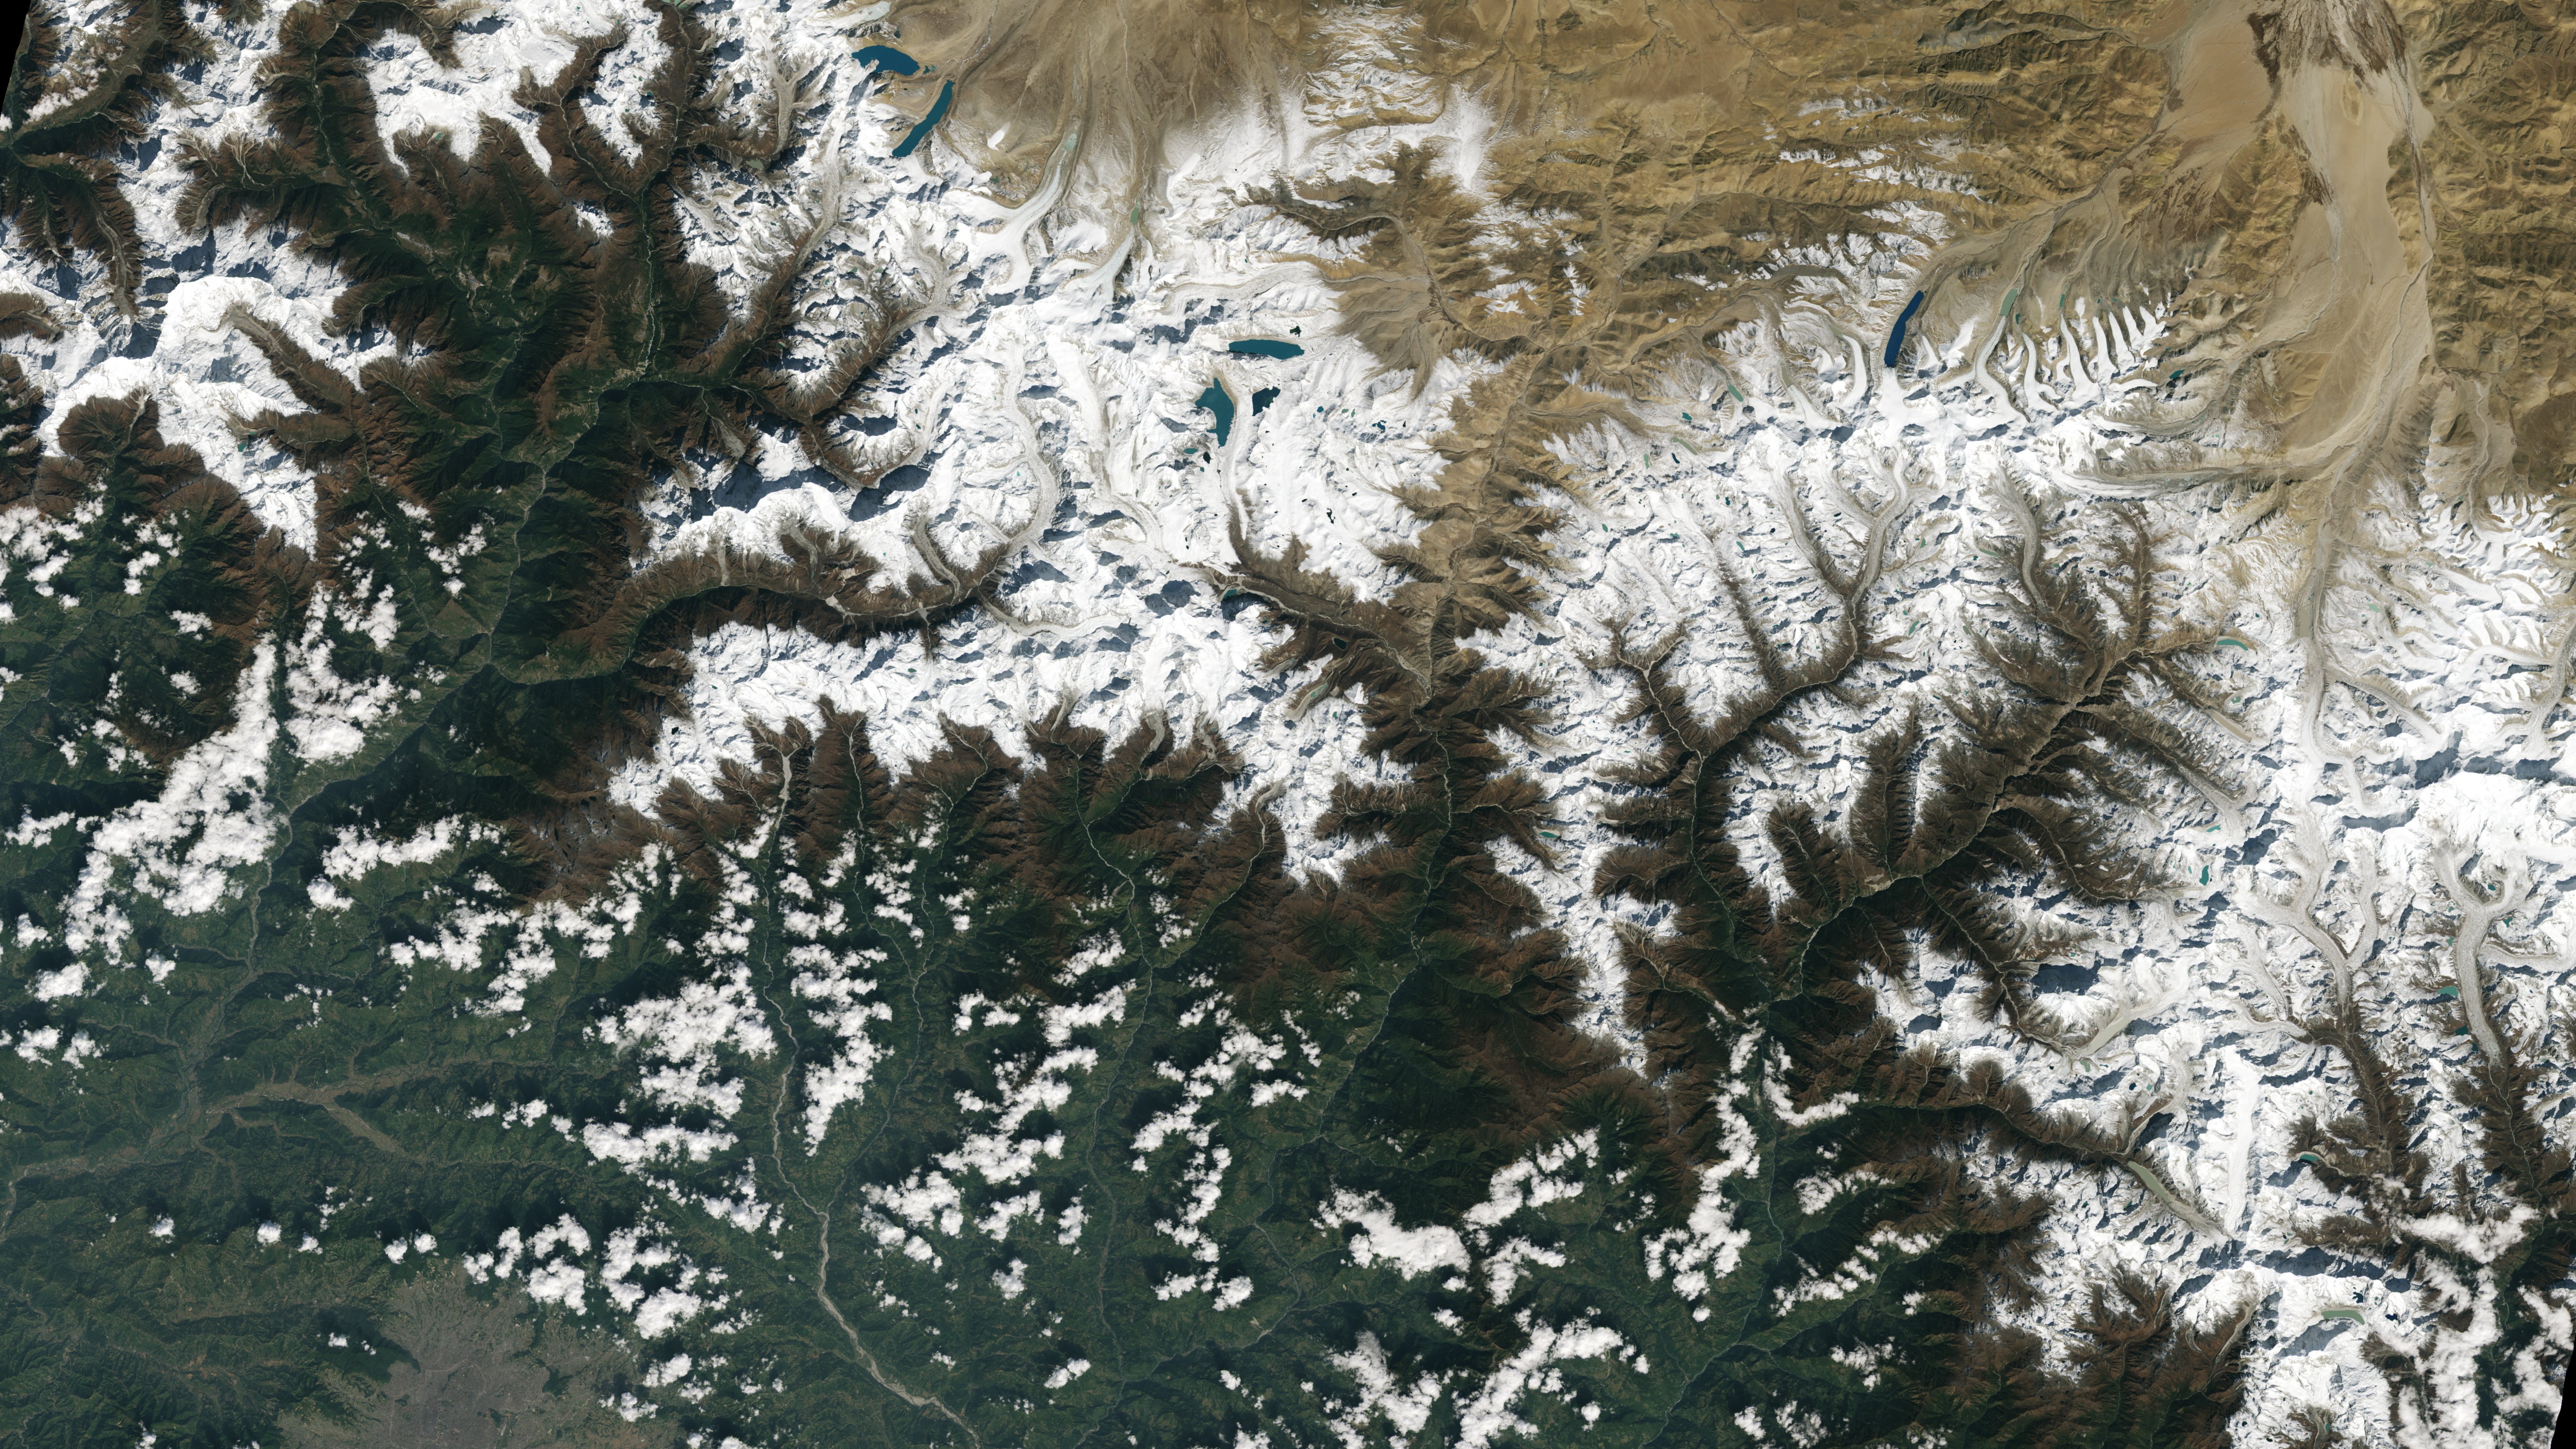 Die Stadt Kathmandu, Nepal, unten links in diesem Landsat 9-Bild zu sehen, liegt in einem Tal südlich des Himalaya-Gebirges zwischen Nepal und China.  In der oberen Mitte dieses Bildes sind Gletscher und die durch Gletscherschmelzwasser gebildeten Seen zu sehen.